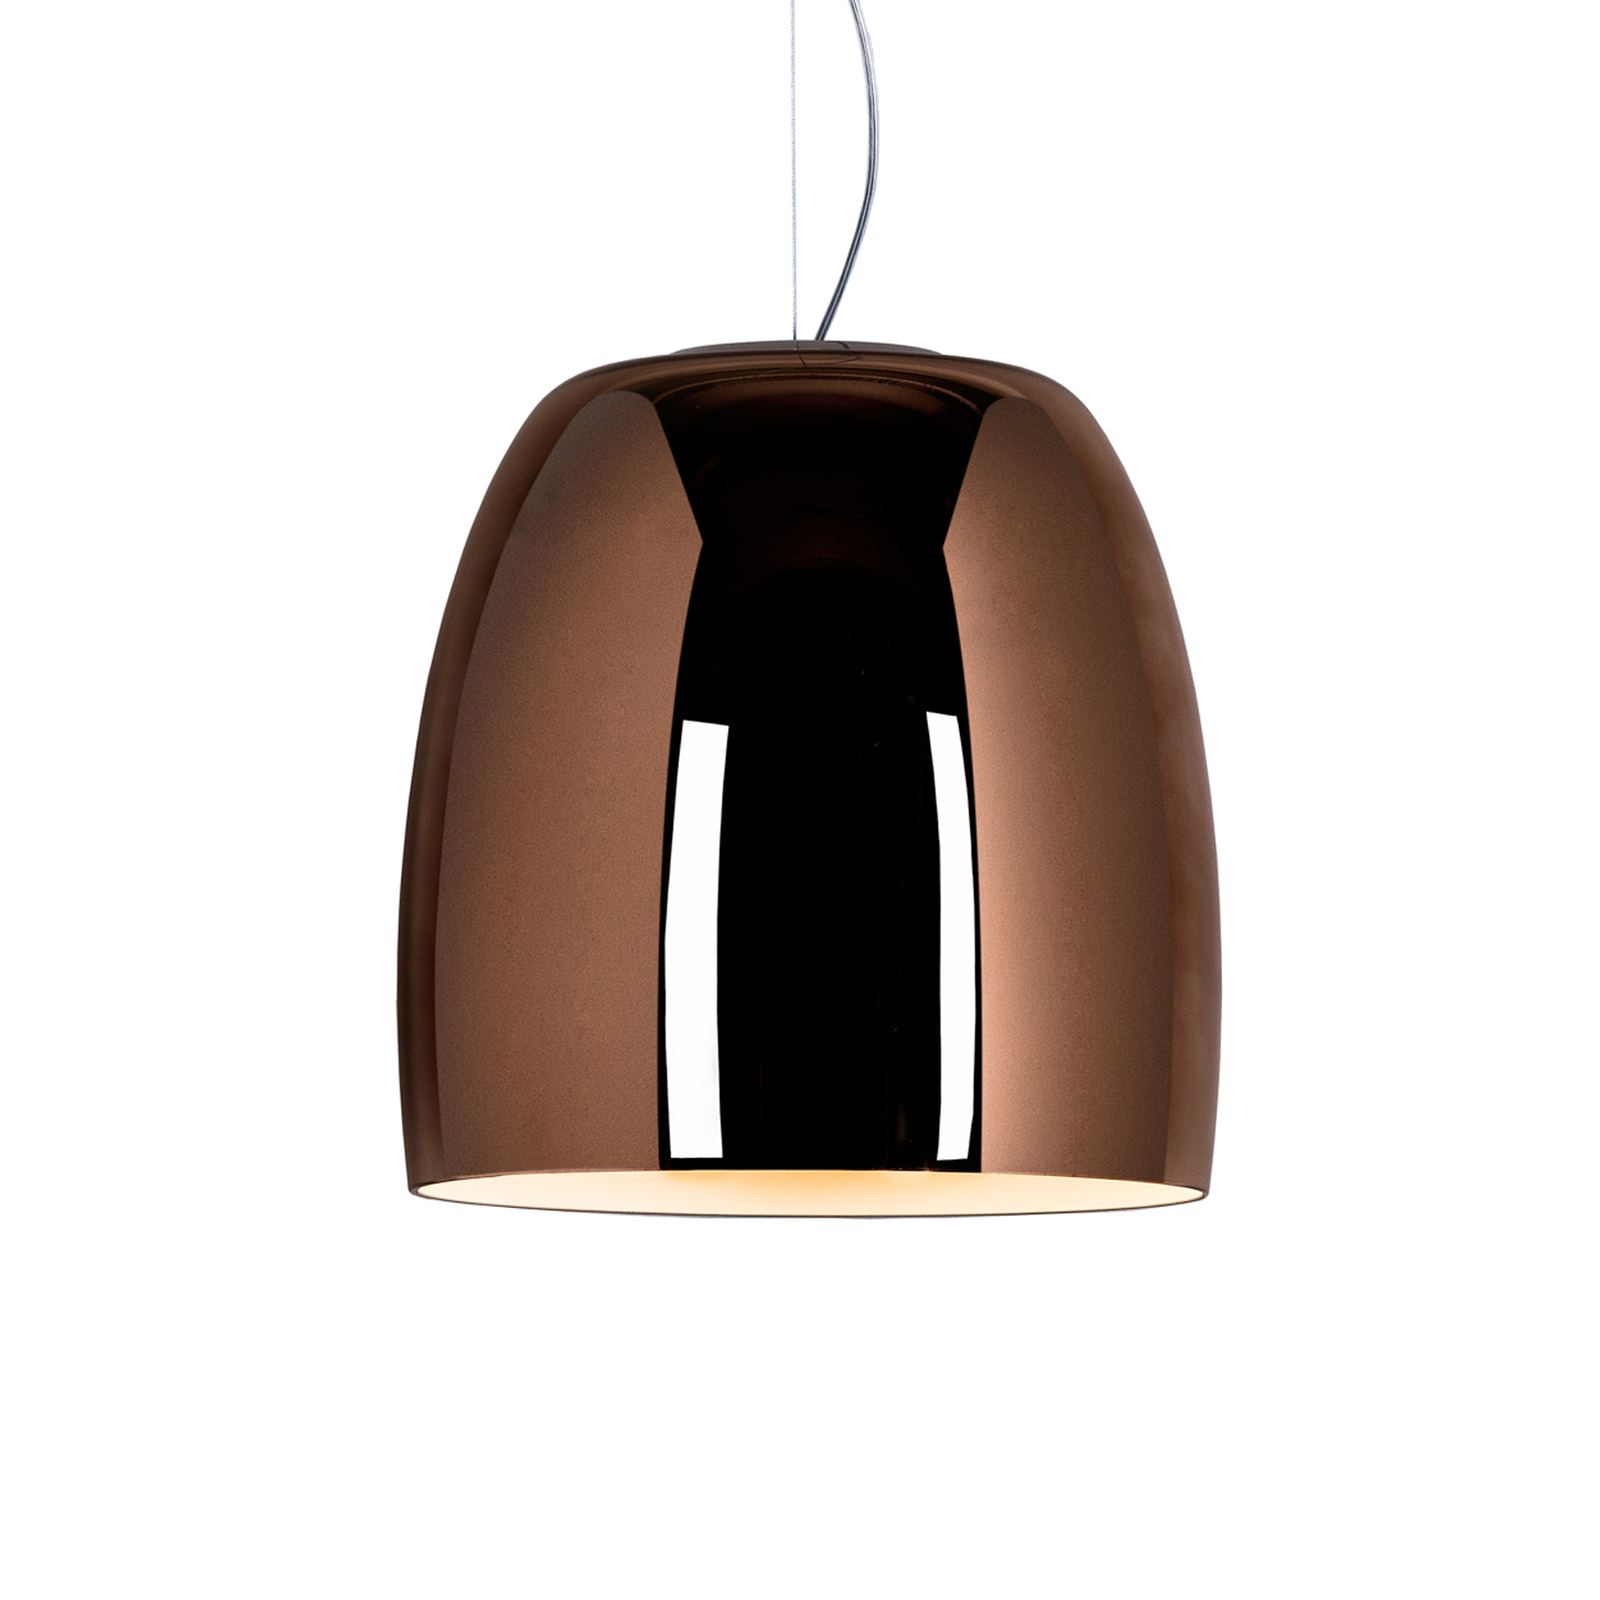 Prandina Notte S5 hanging light, copper/white